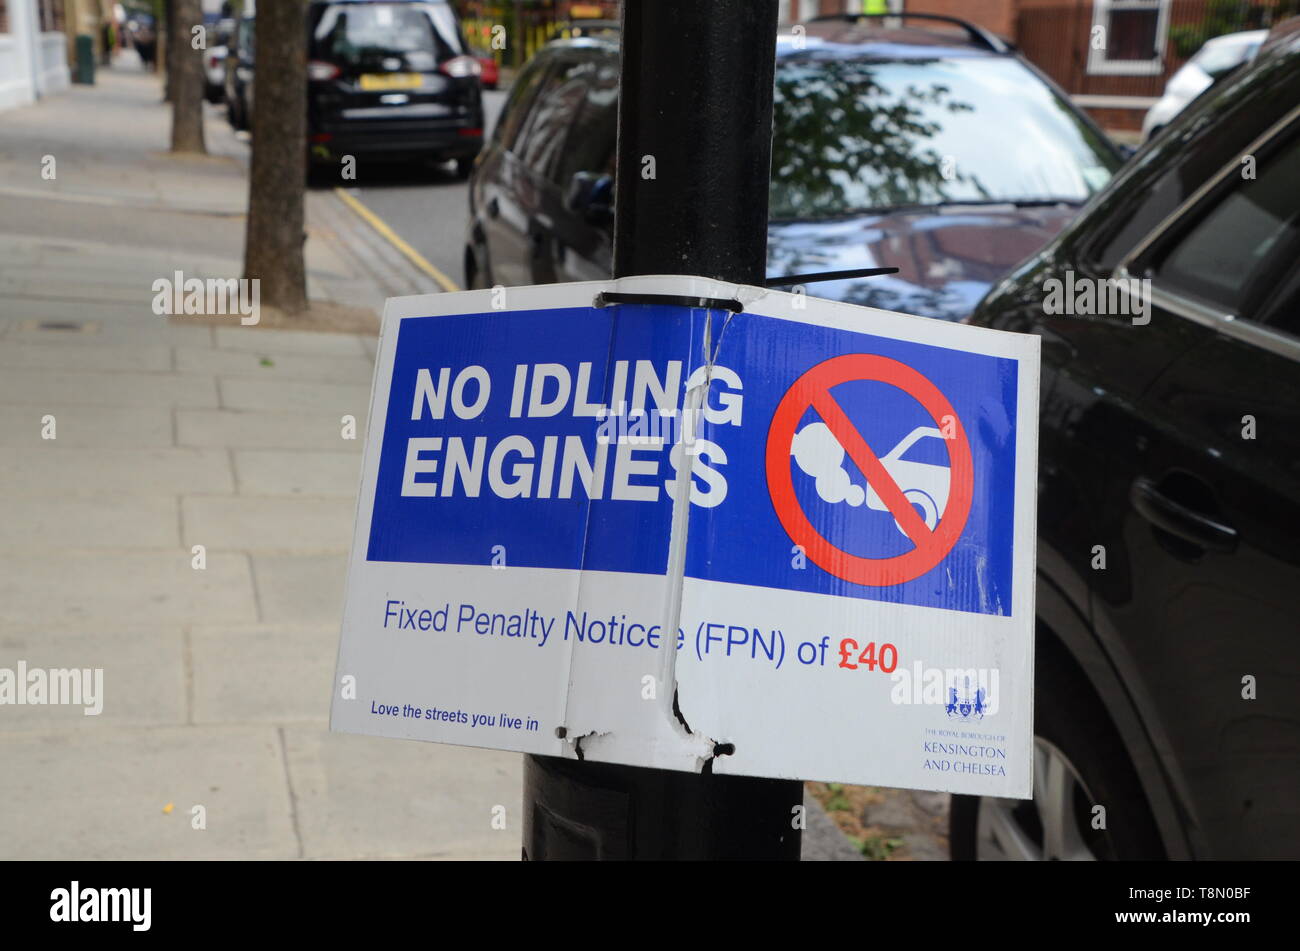 Avertissement un signe aux automobilistes de ne pas s'asseoir avec les moteurs au ralenti ou ils risquent une amende de 40 € de la part du conseil dans London England UK Banque D'Images